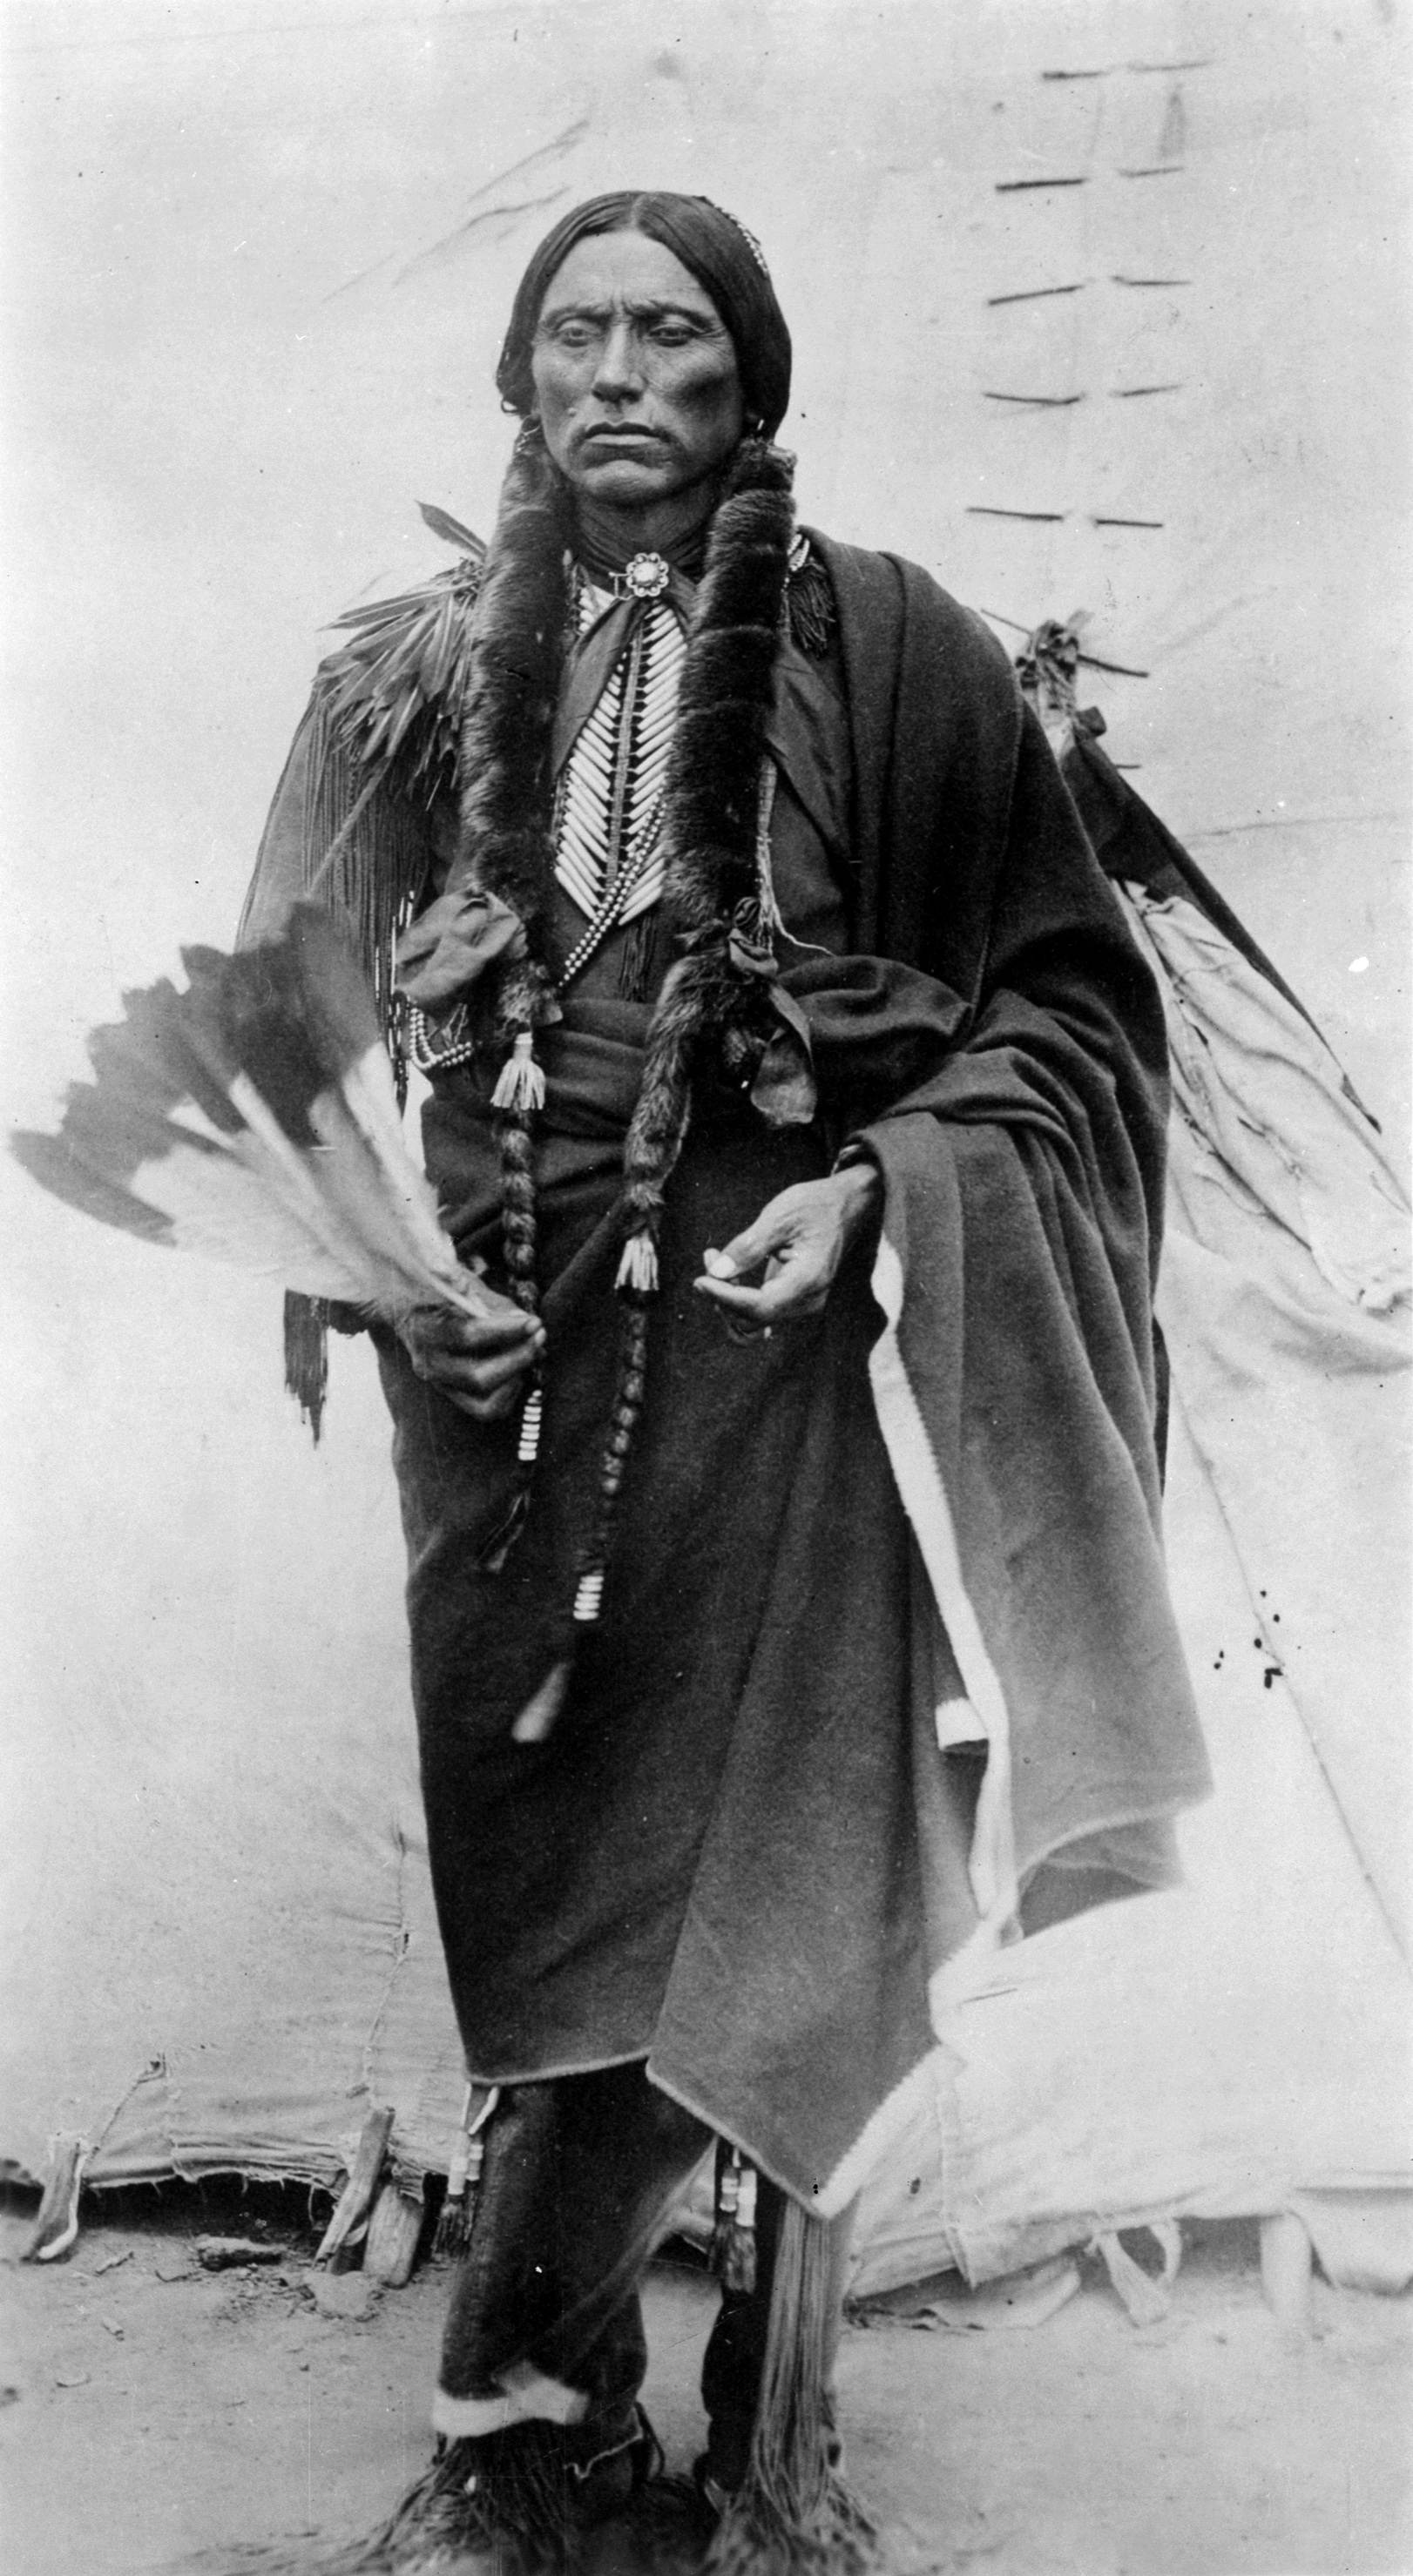 West Of Cheyenne [1931]